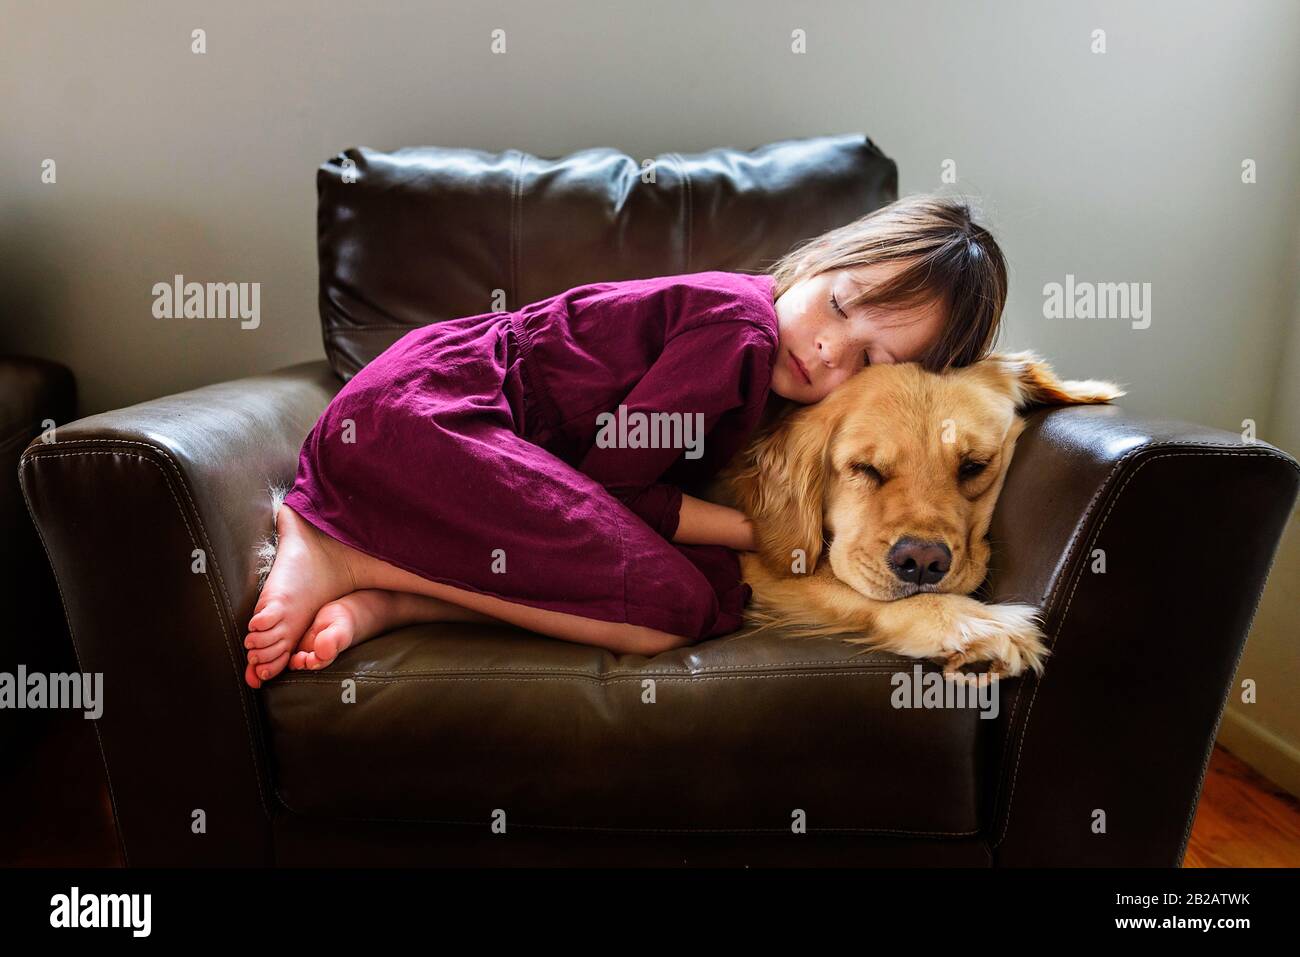 Une fille s'est rebouclés dans un fauteuil avec un chien doré Banque D'Images